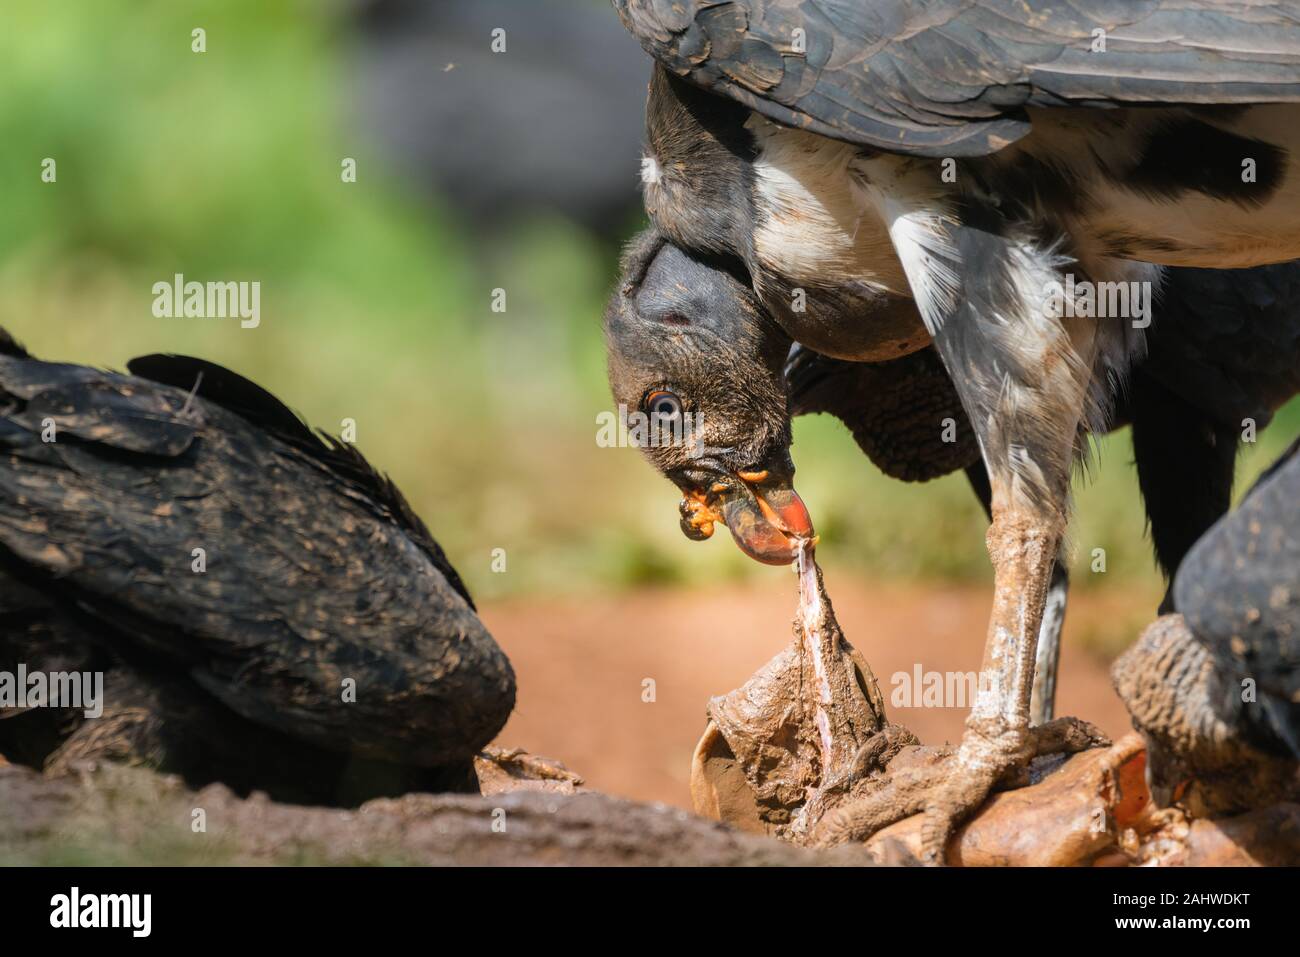 La Vulture giovanile del re (Sarcoranfus papa) si nutre su un carrion con avvoltoi neri (Coragyps atatus) intorno, Laguna del Lagarto, Costa Rica Foto Stock